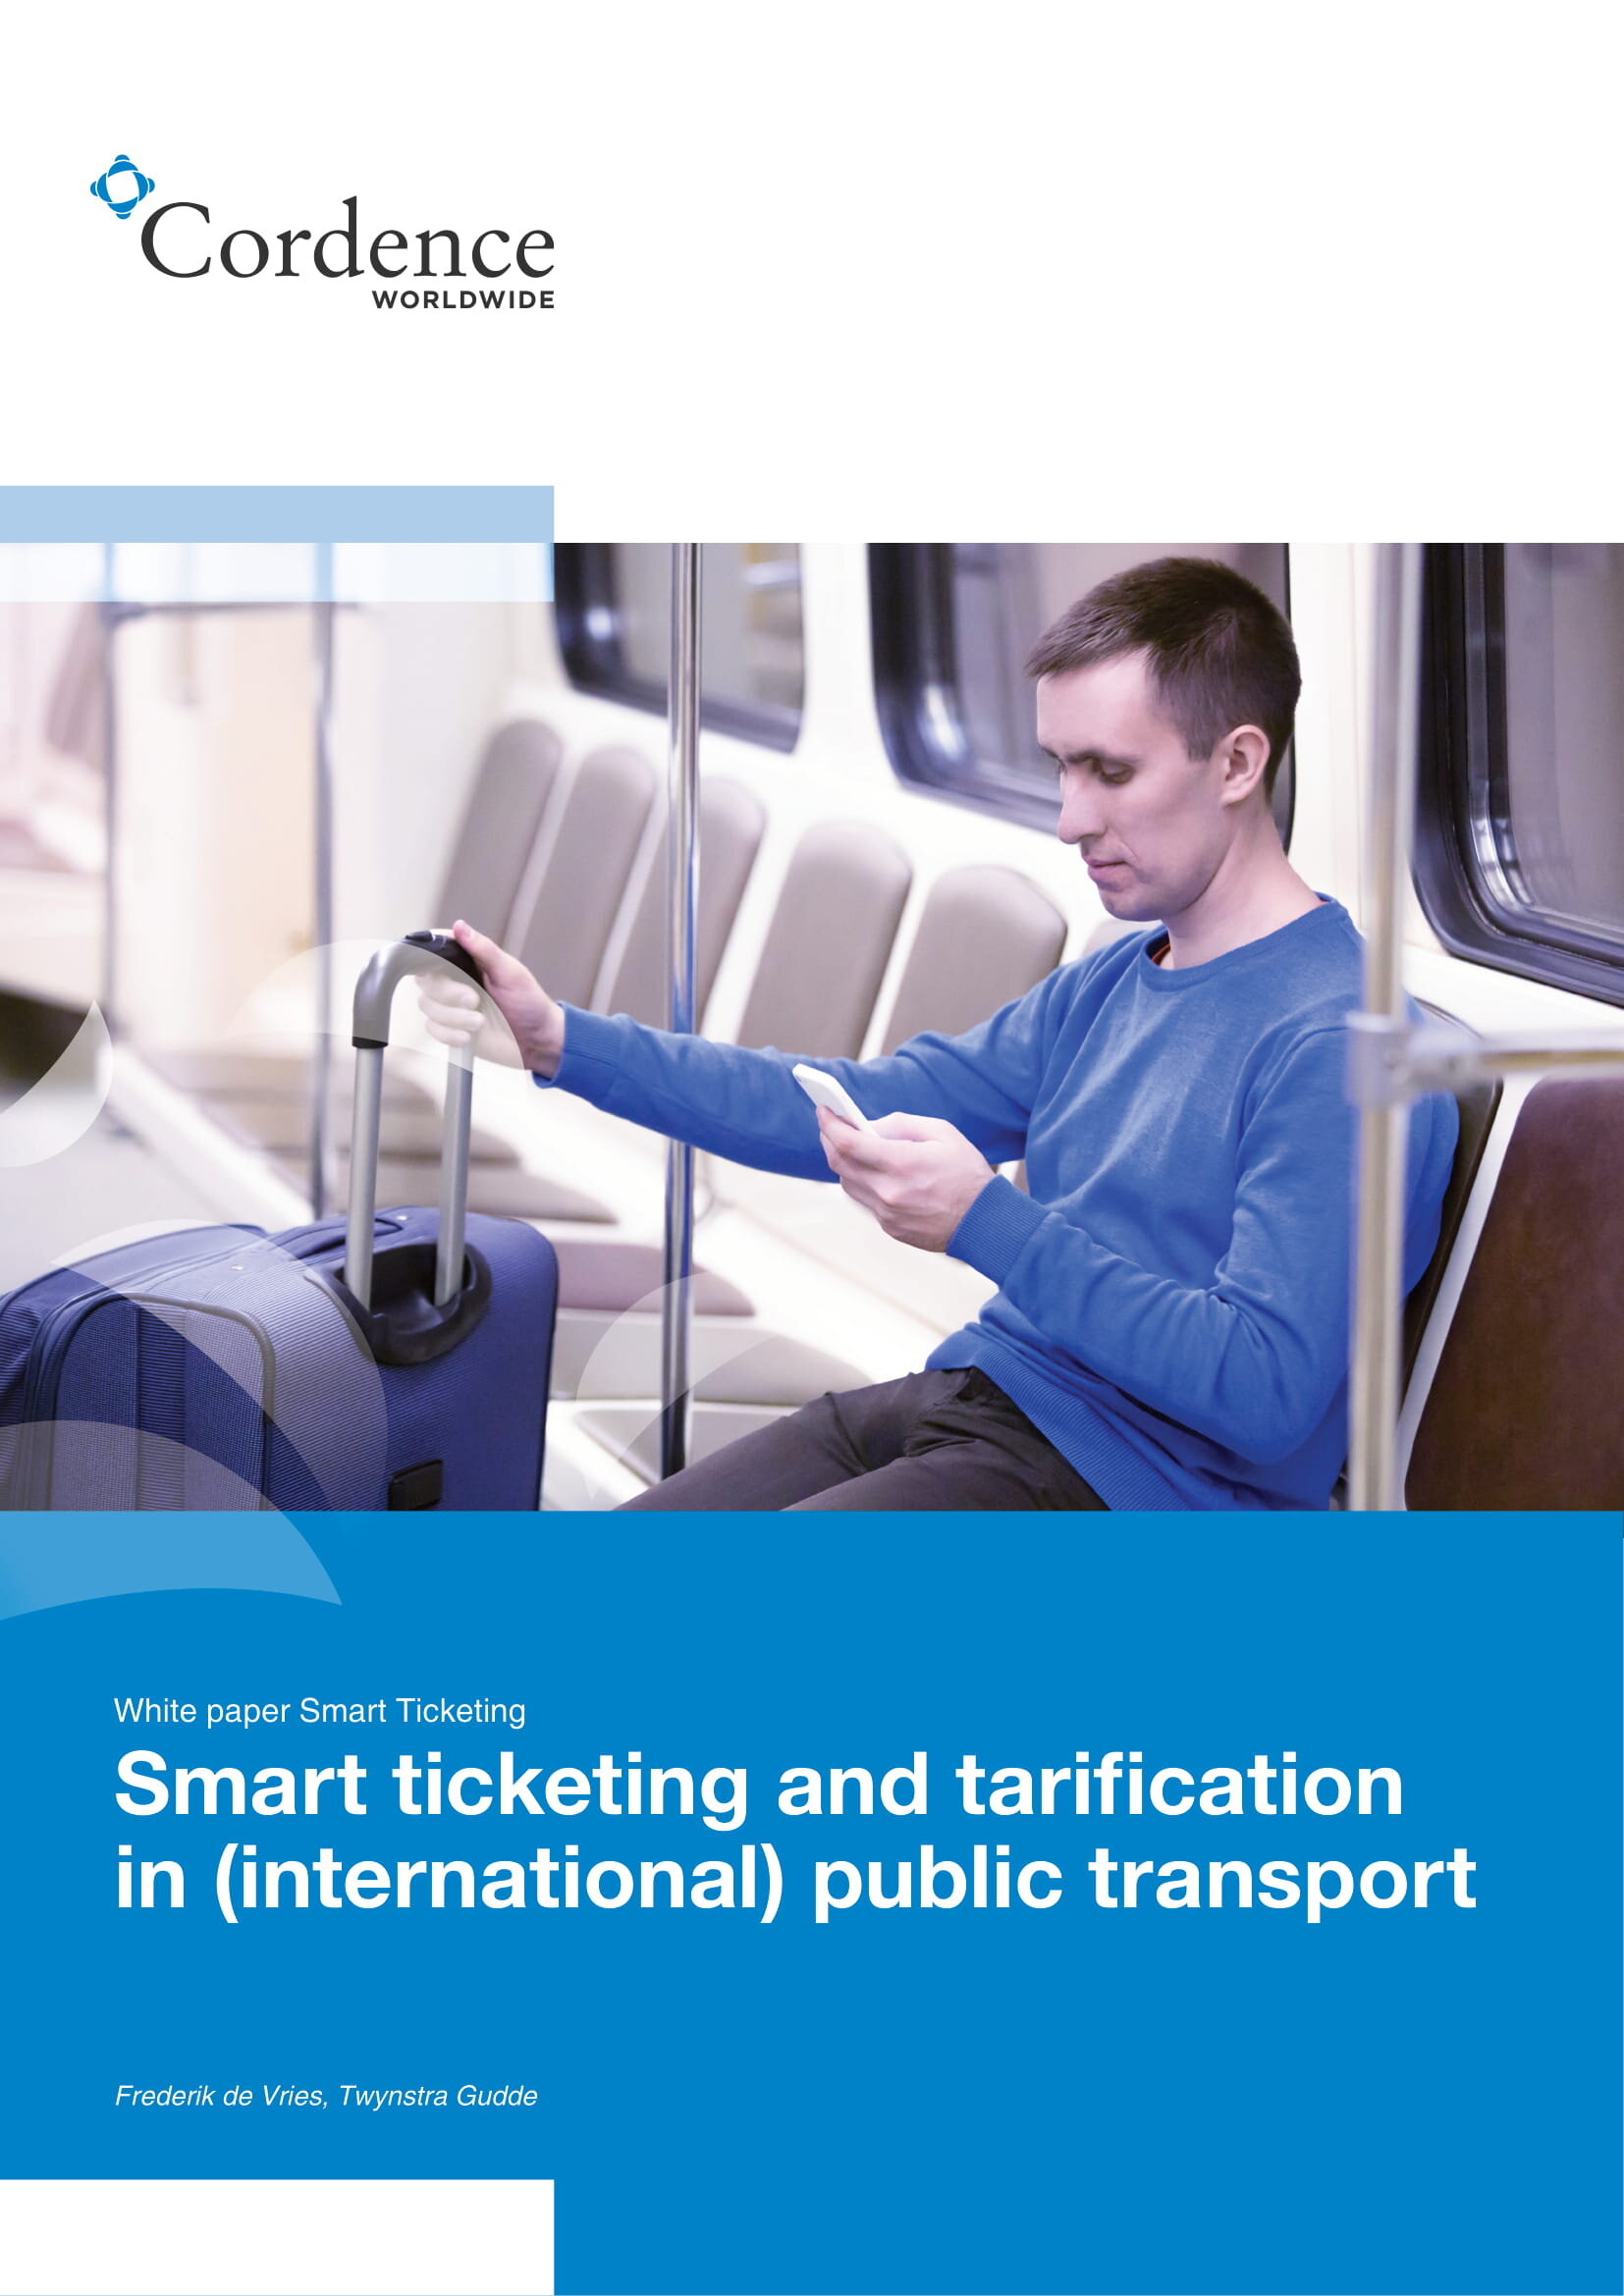 Smart ticketing and tarification in (international) public transport-1.jpg